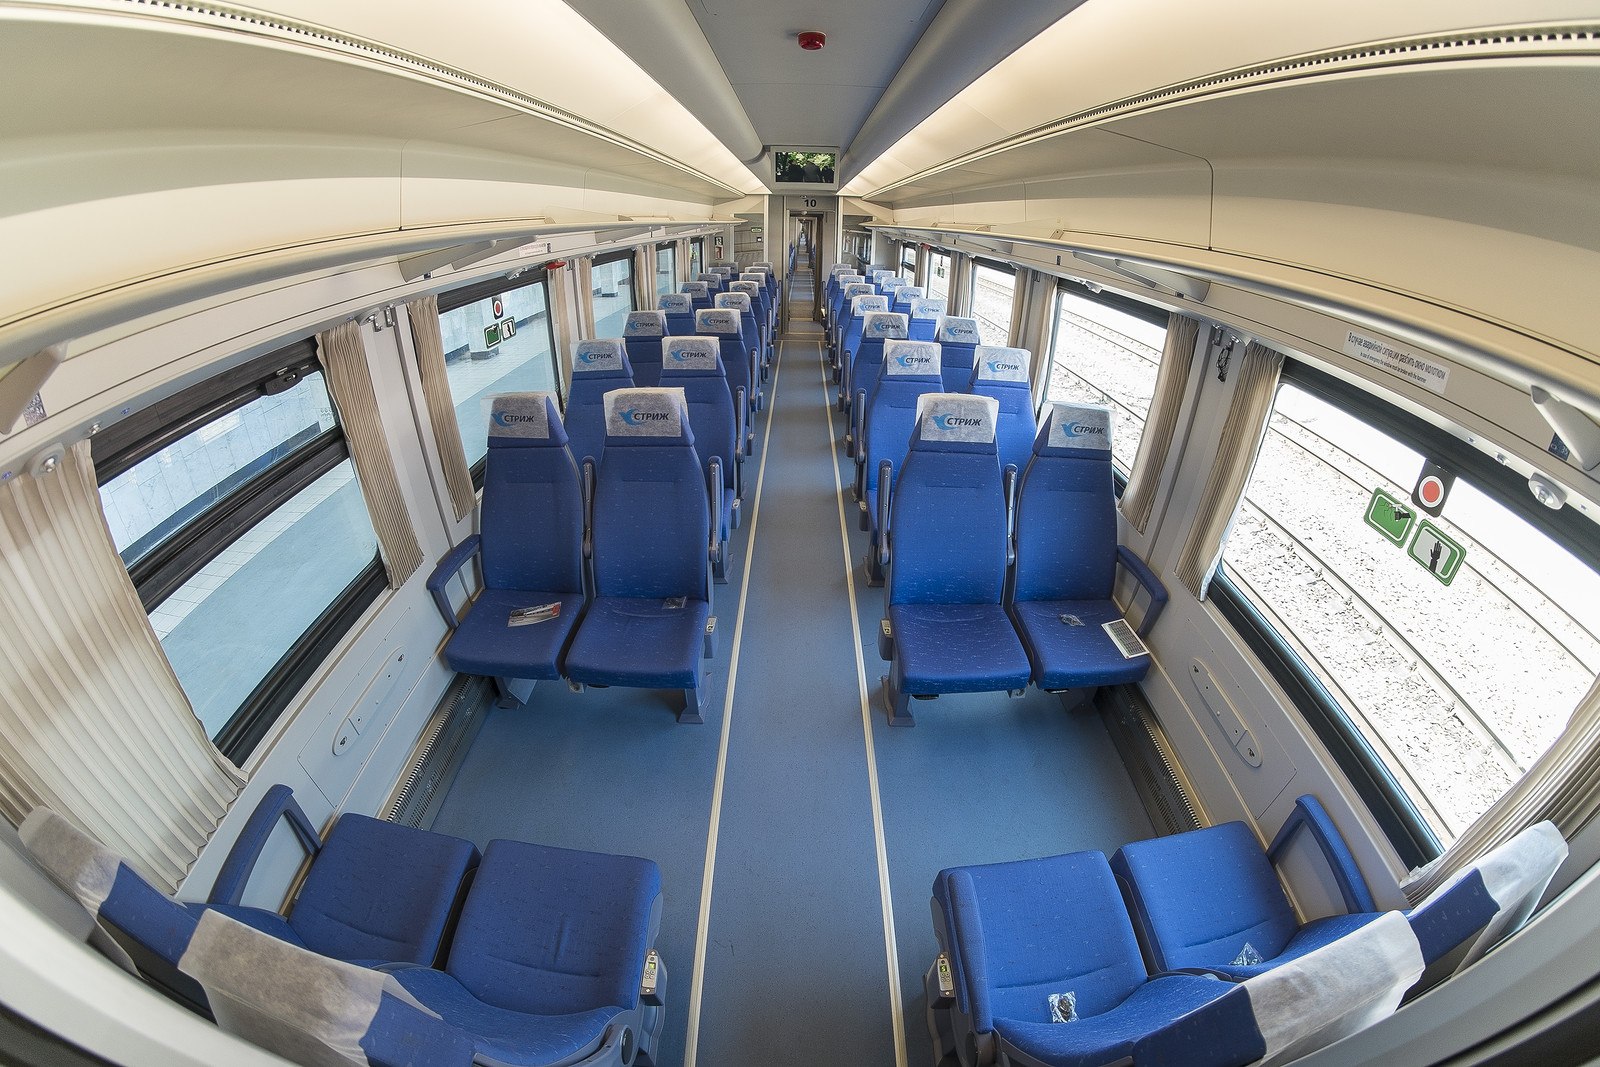 поезд ласточка фото внутри вагона сидячие места